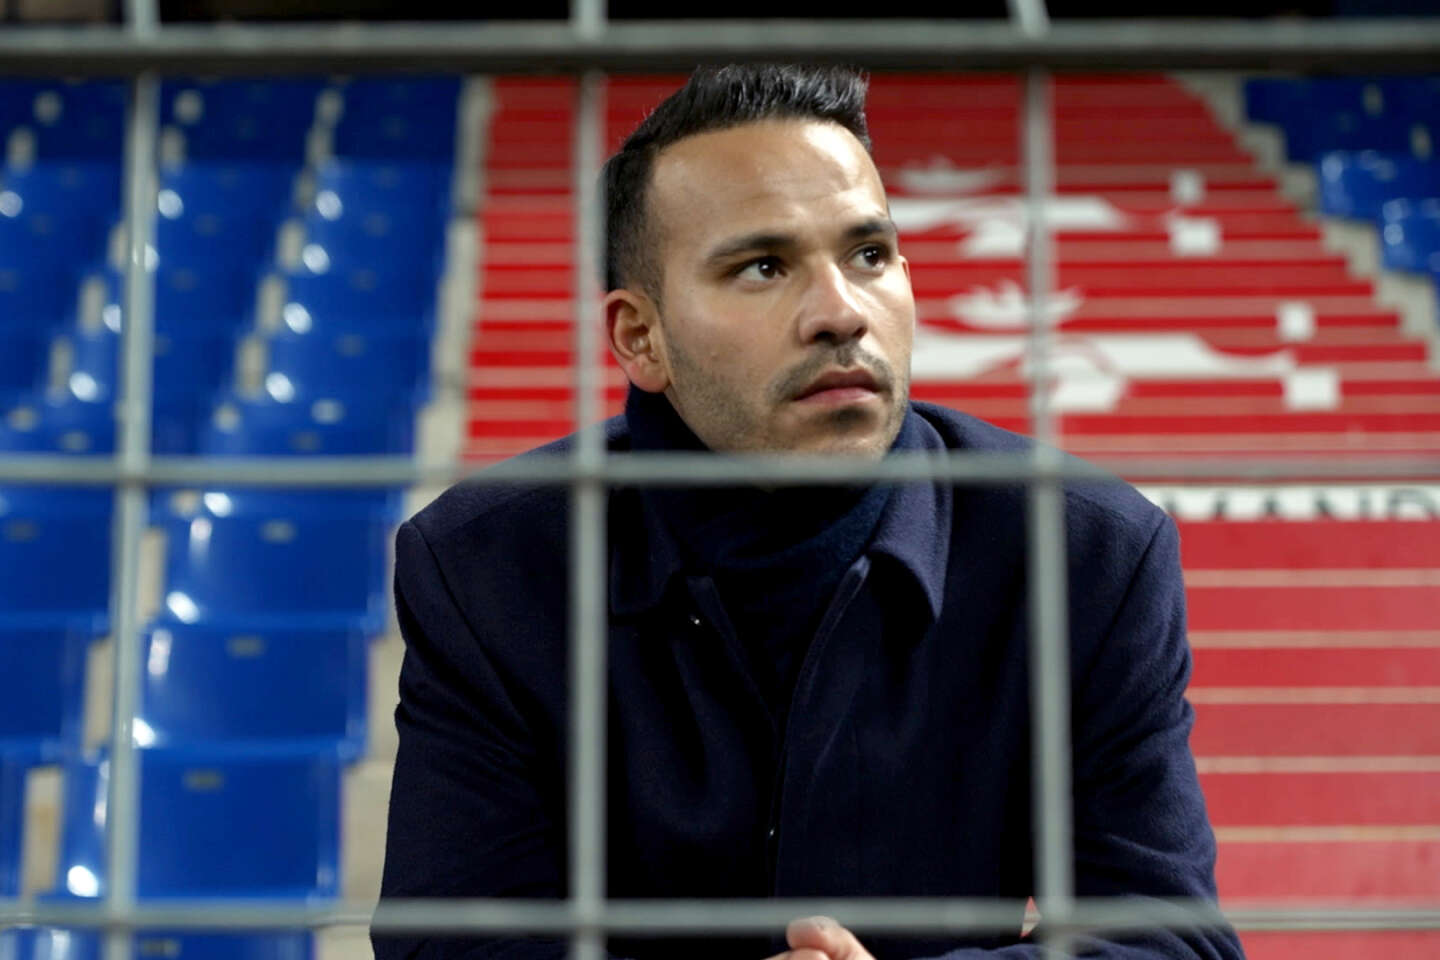 Regarder la vidéo « Des cris dans le stade. Enquête sur le racisme dans le football », sur France 5 : Mohamed Bouhafsi livre un état des lieux implacable